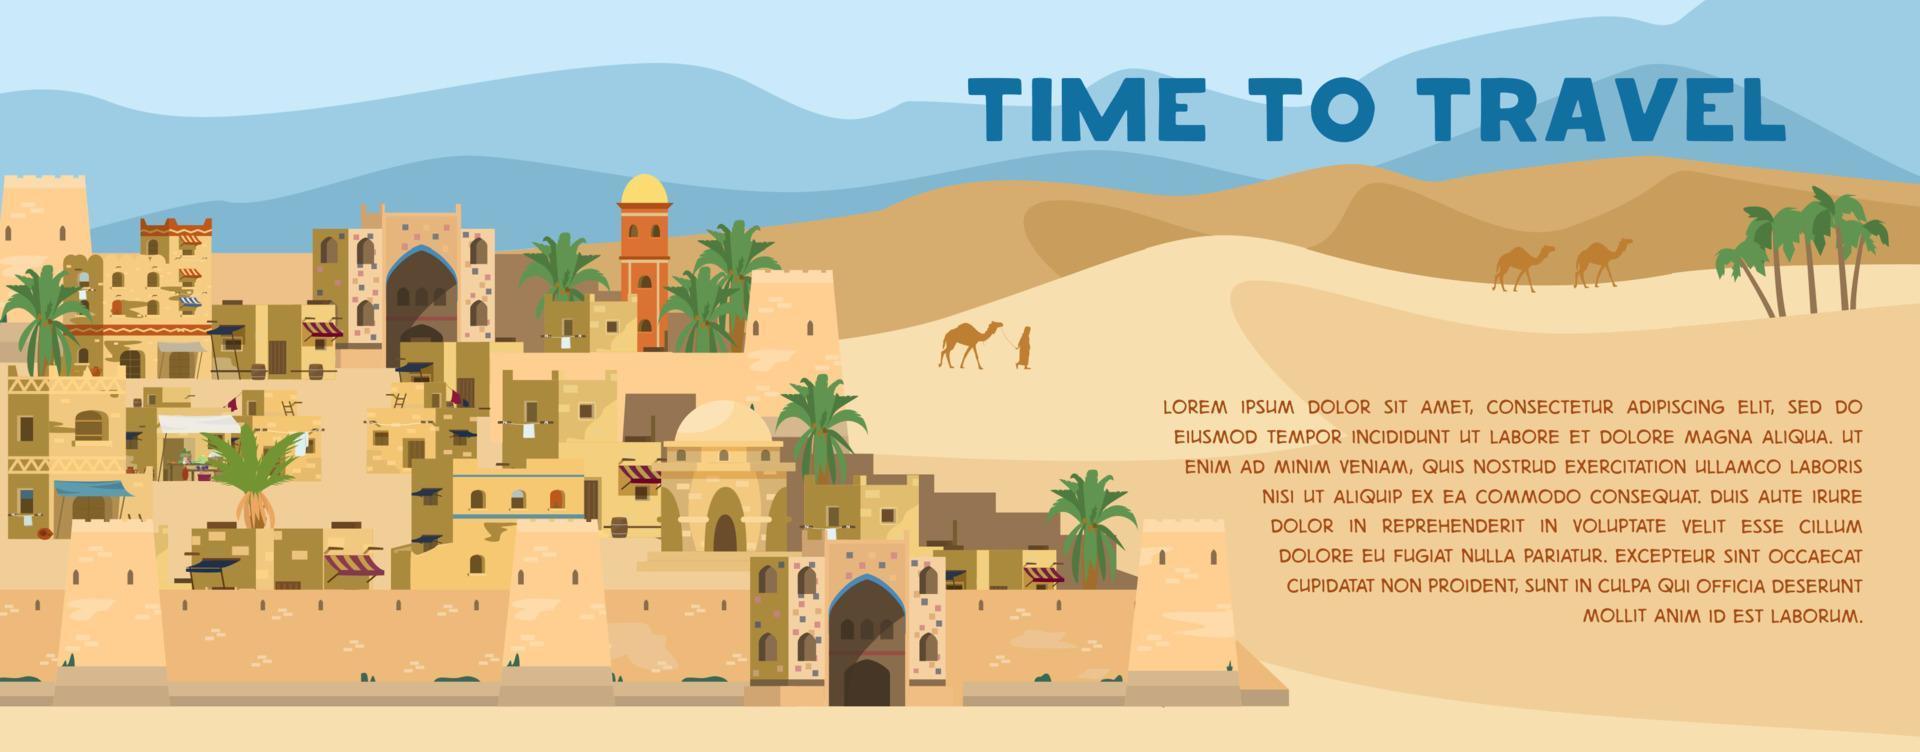 hora de viajar banner vectorial con ilustración de la antigua ciudad árabe en el paisaje desértico con casas tradicionales de ladrillos de barro, palmeras, camellos. diseño plano. vector